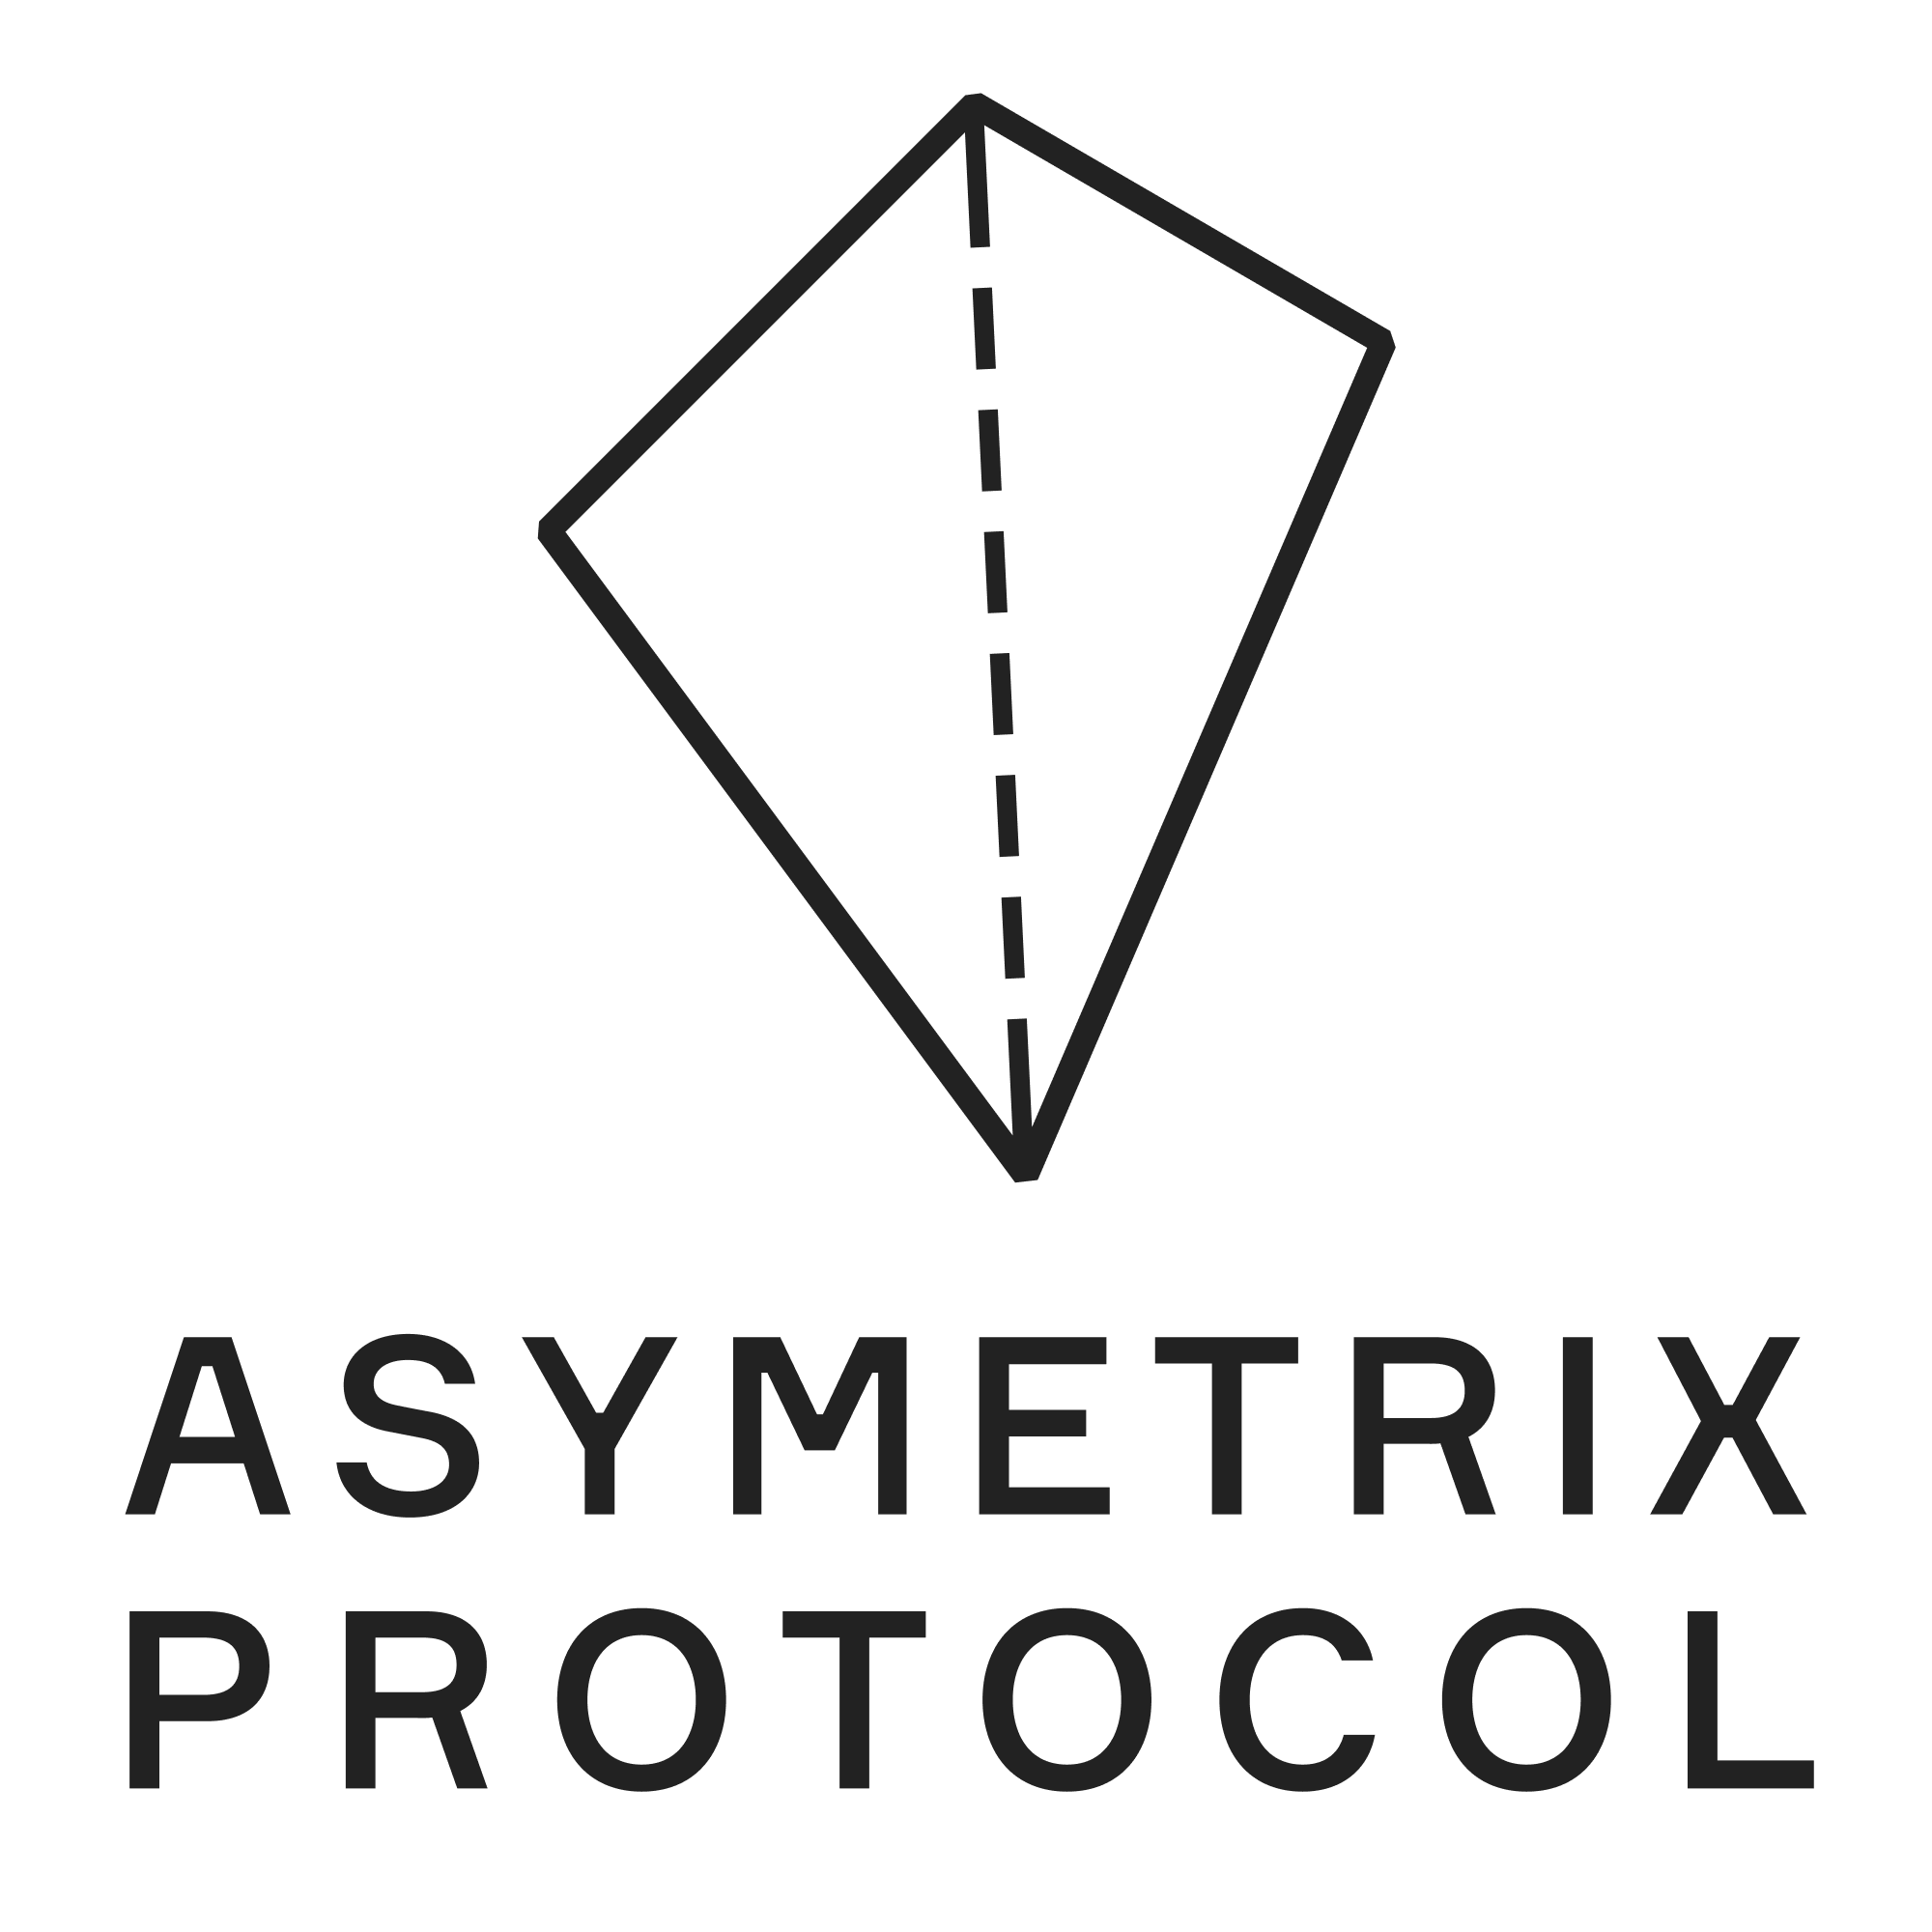 Asymetrix Protocol image